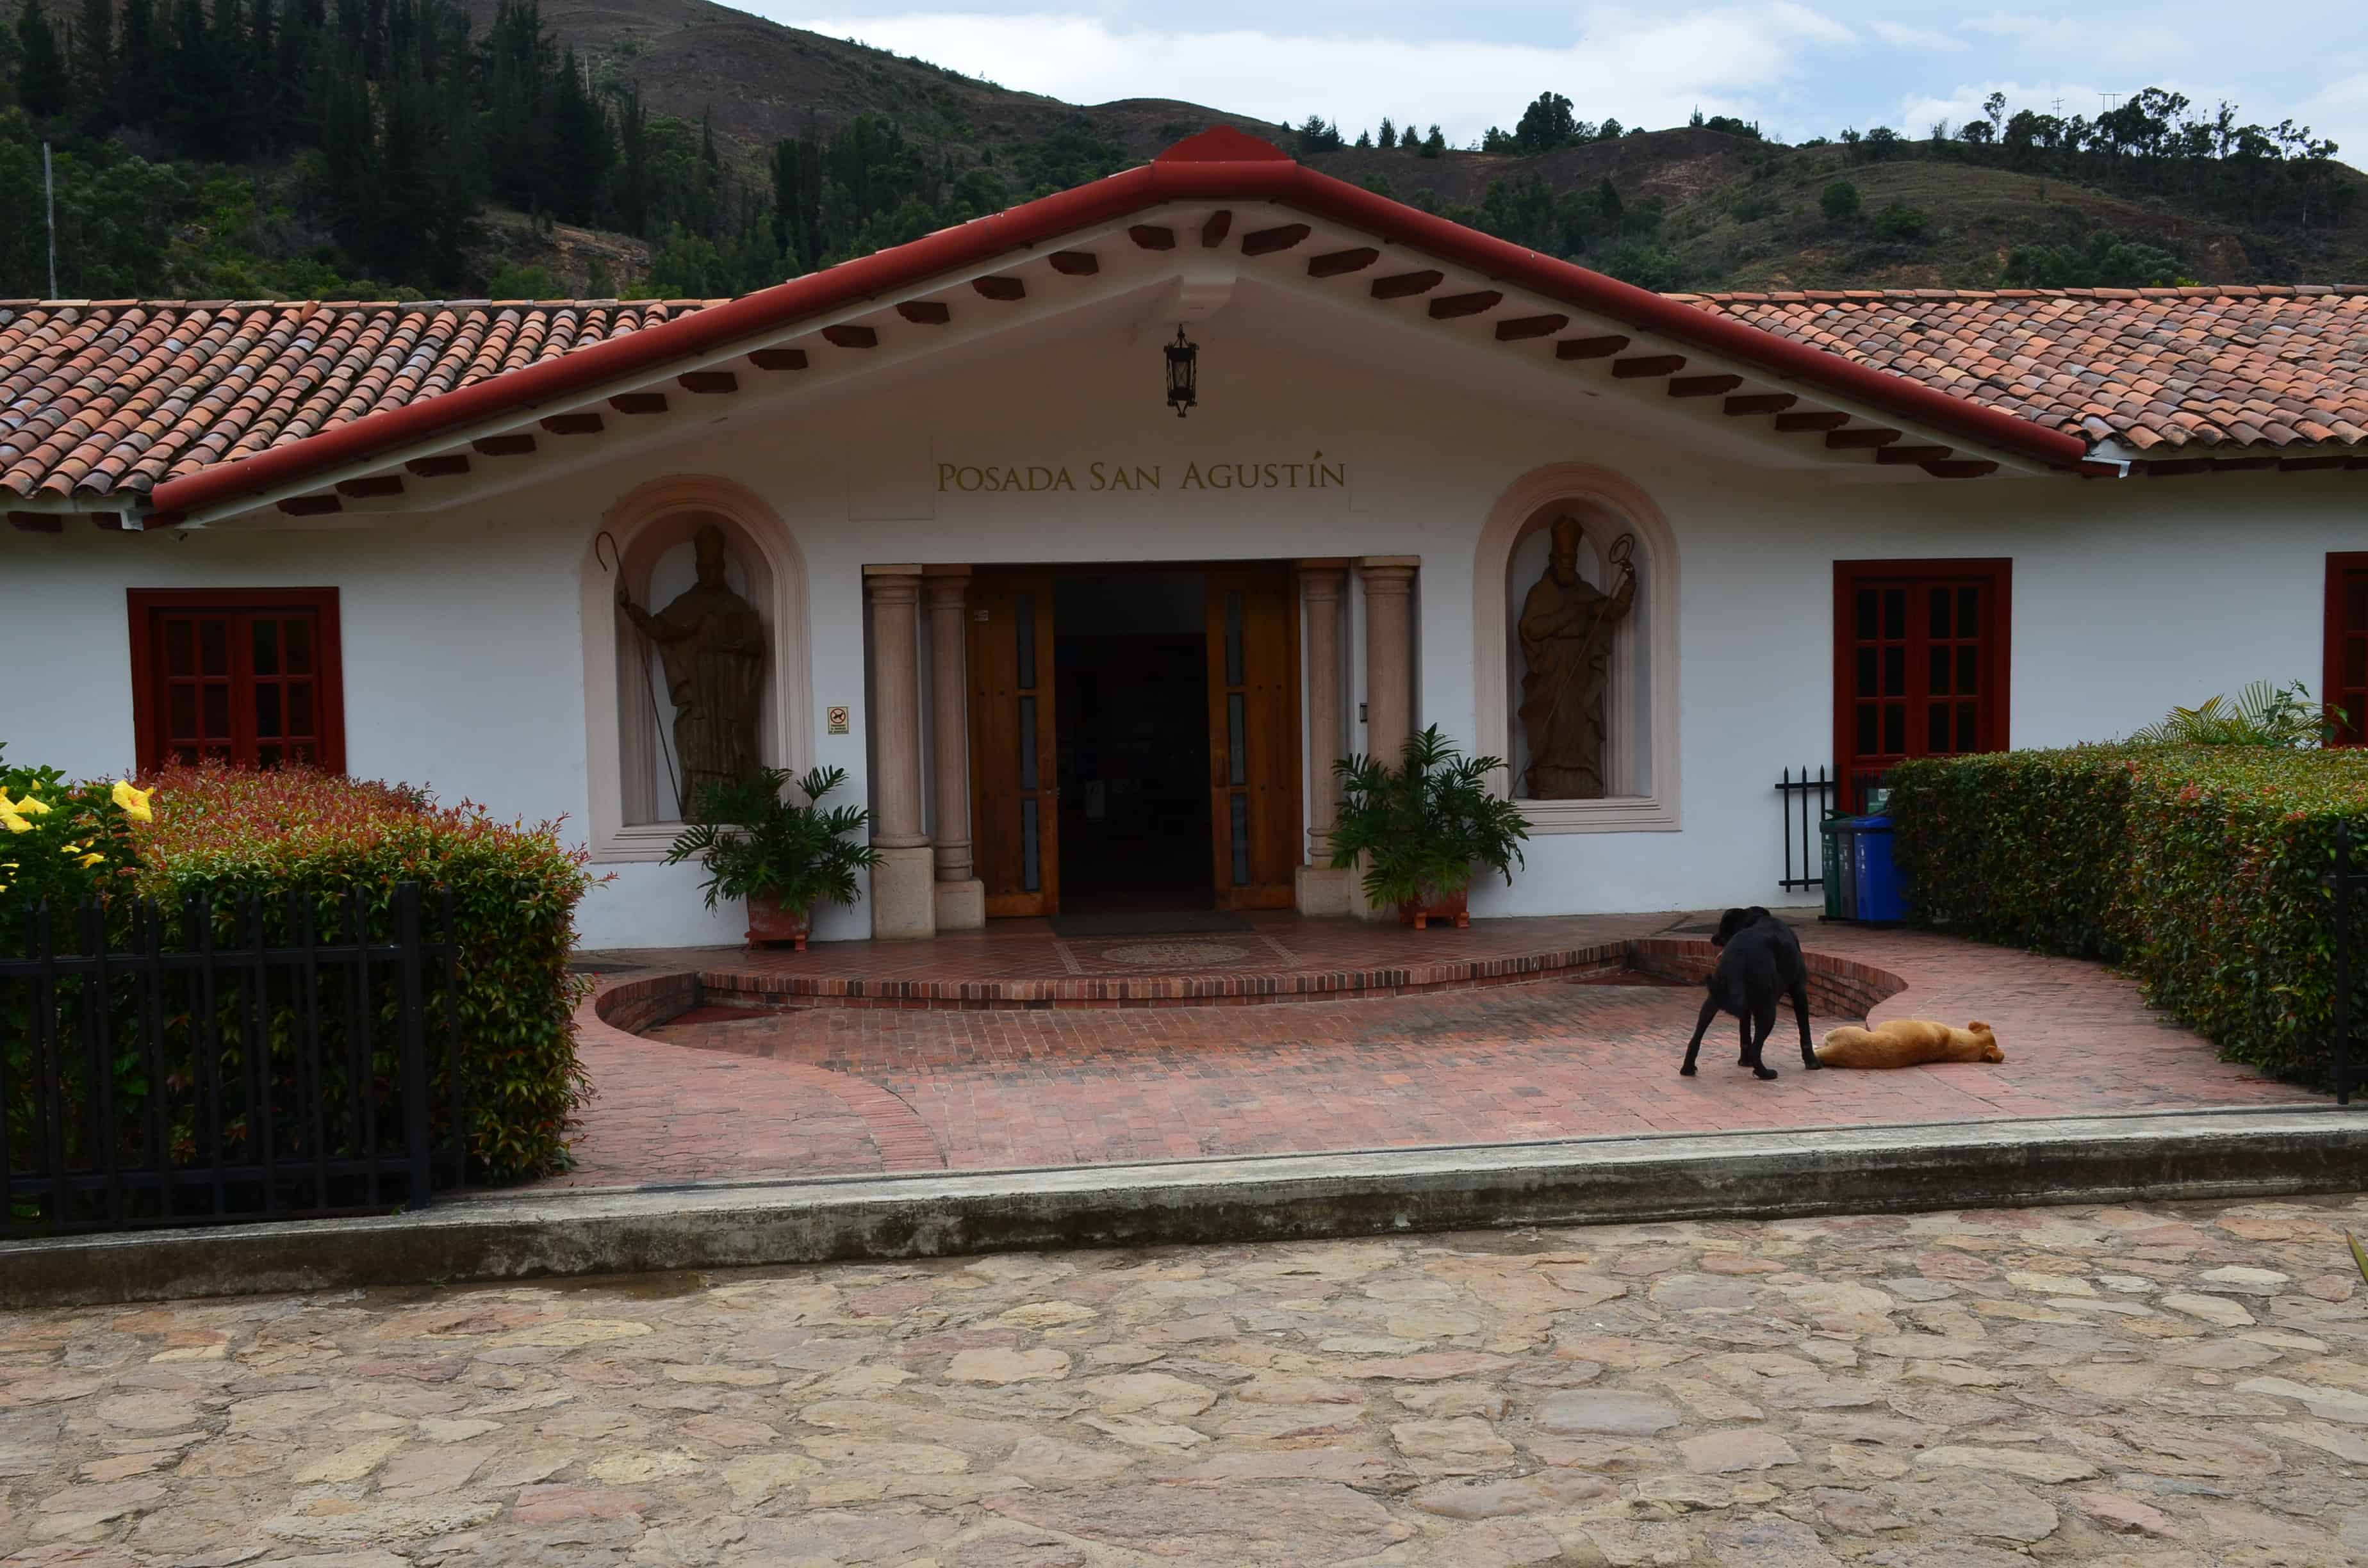 Posada San Agustín at La Candelaria Monastery, Boyacá, Colombia